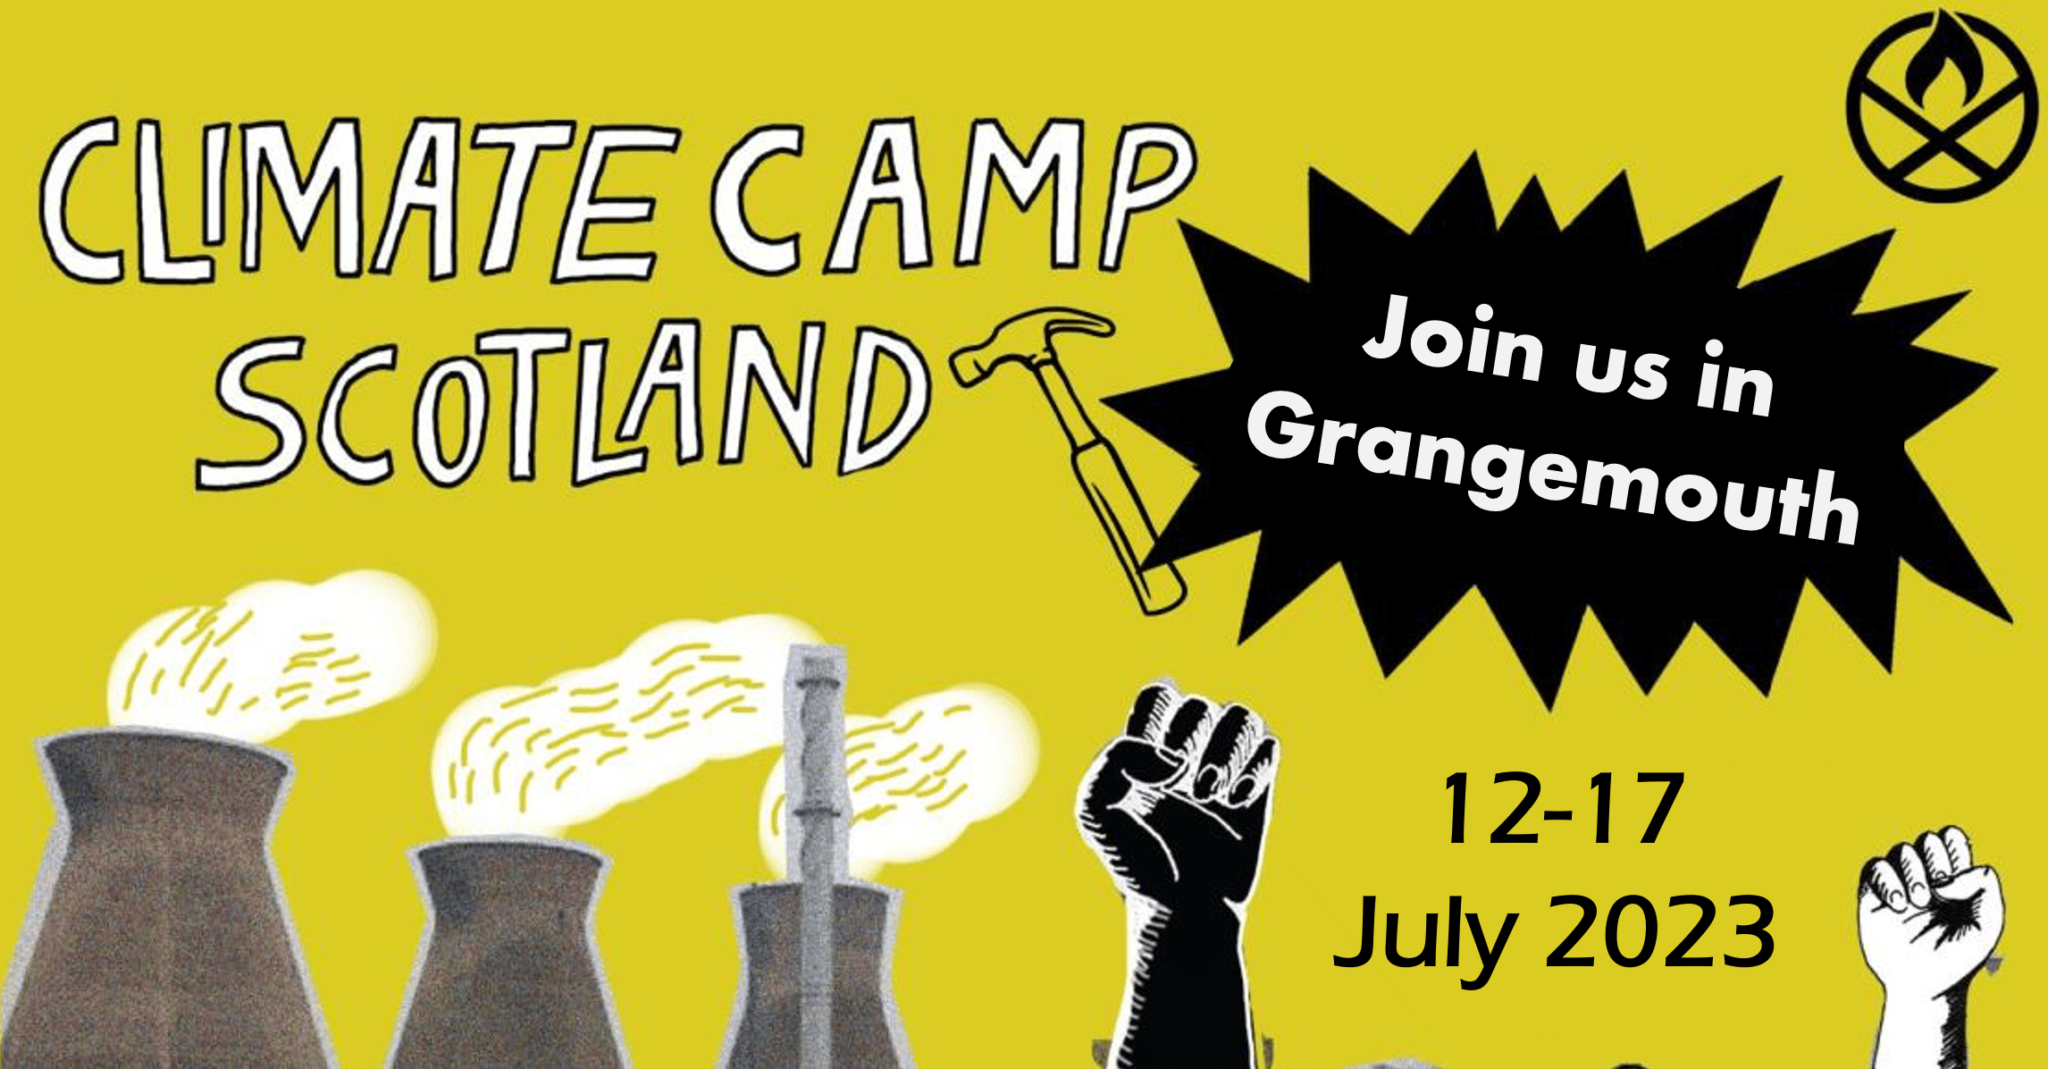 Climate Camp Scotland 2023